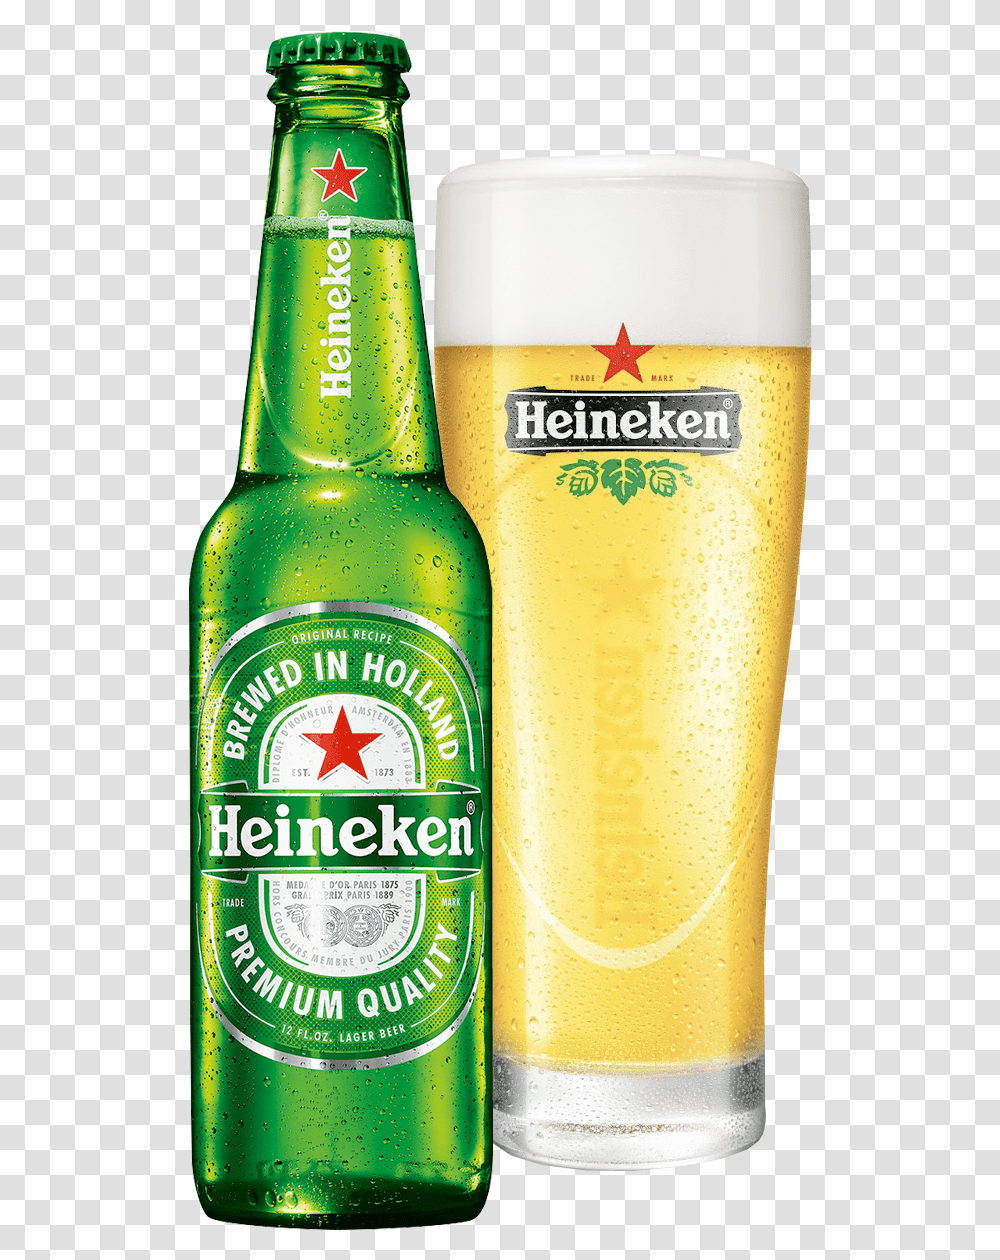 Heineken Bottle, Beer, Alcohol, Beverage, Drink Transparent Png